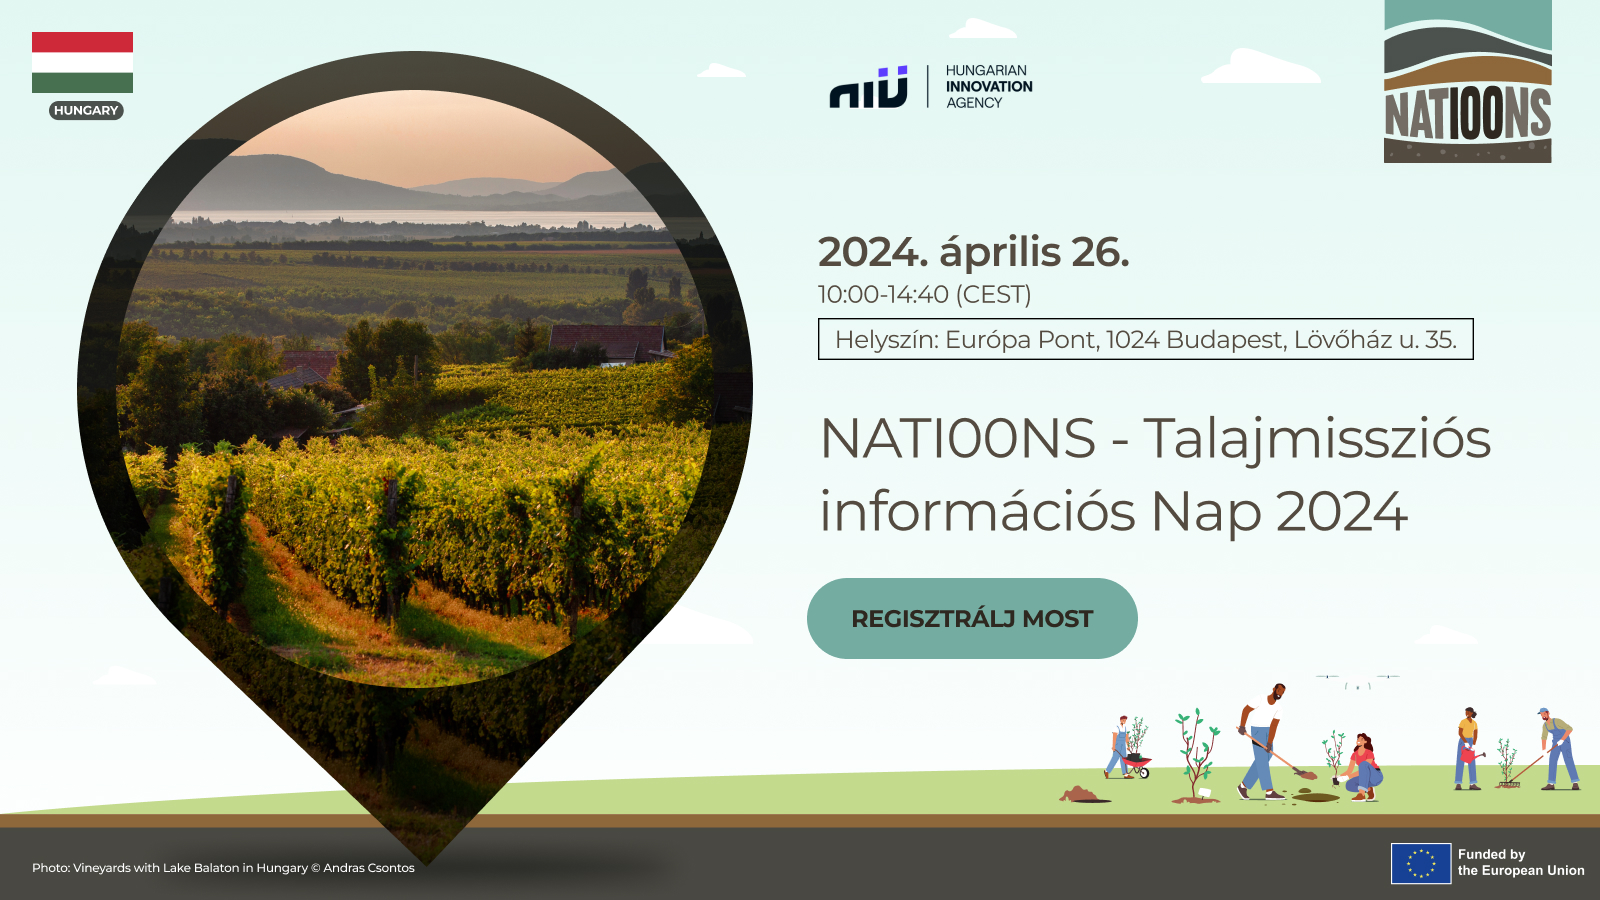 NATI00NS - Talajmissziós információs Nap 2024